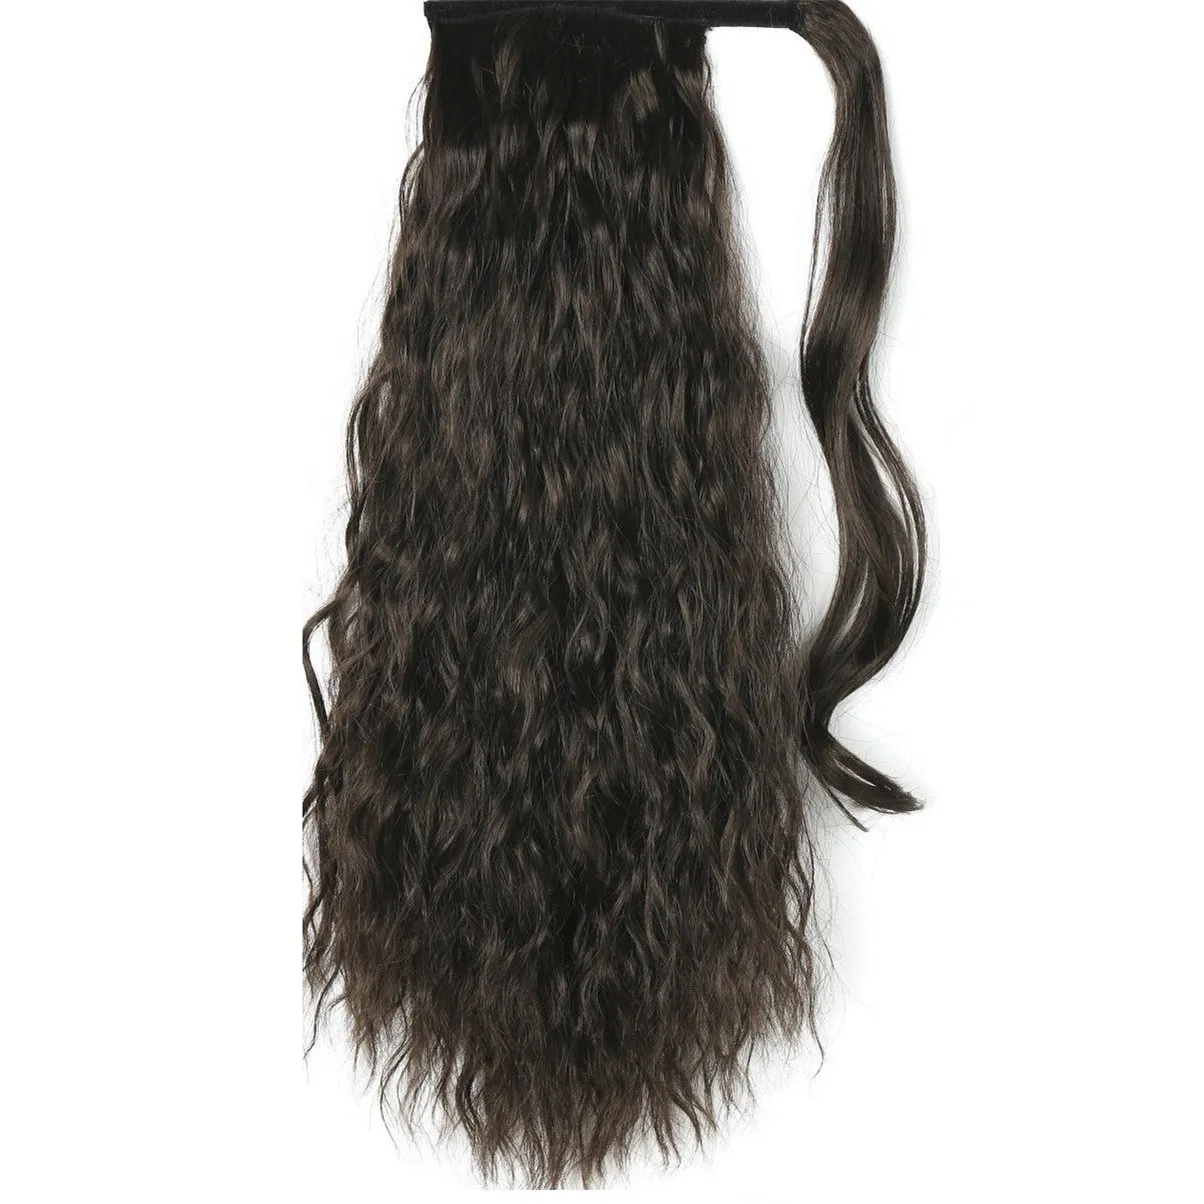 24インチ160g長い巻き毛波状黒茶色のポニーテールの延長テール女性4色ロングバンズ爪ラップヘアポニーテールヘアピース